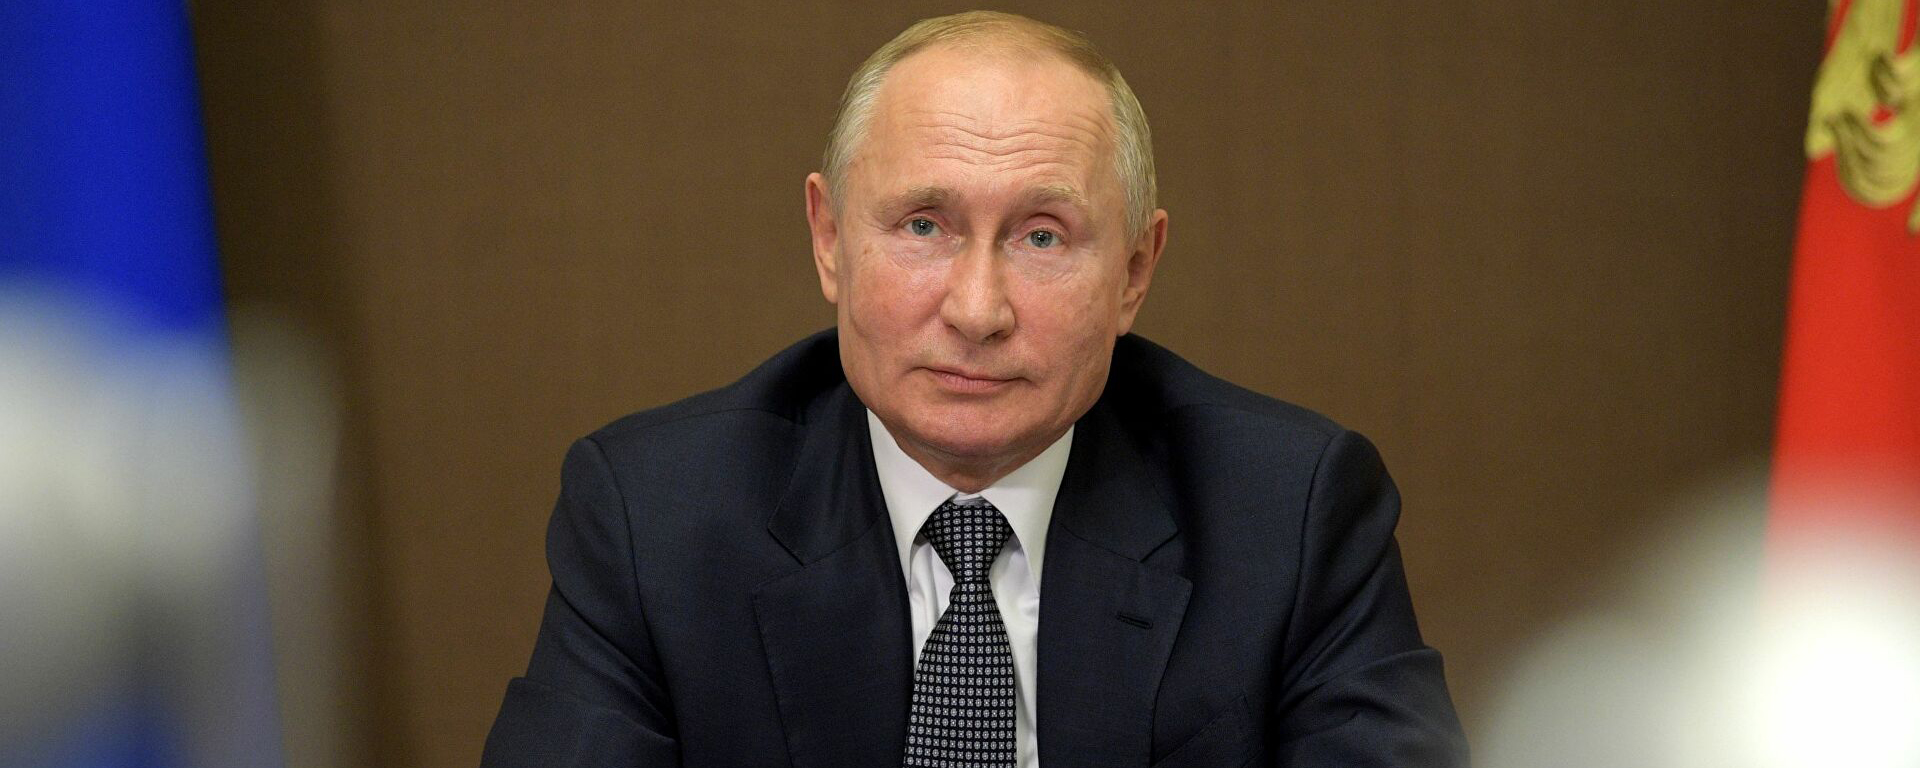 Посол ЮАР Макетука рассказал, что в его стране каждый ребенок знает, кто такой Путин